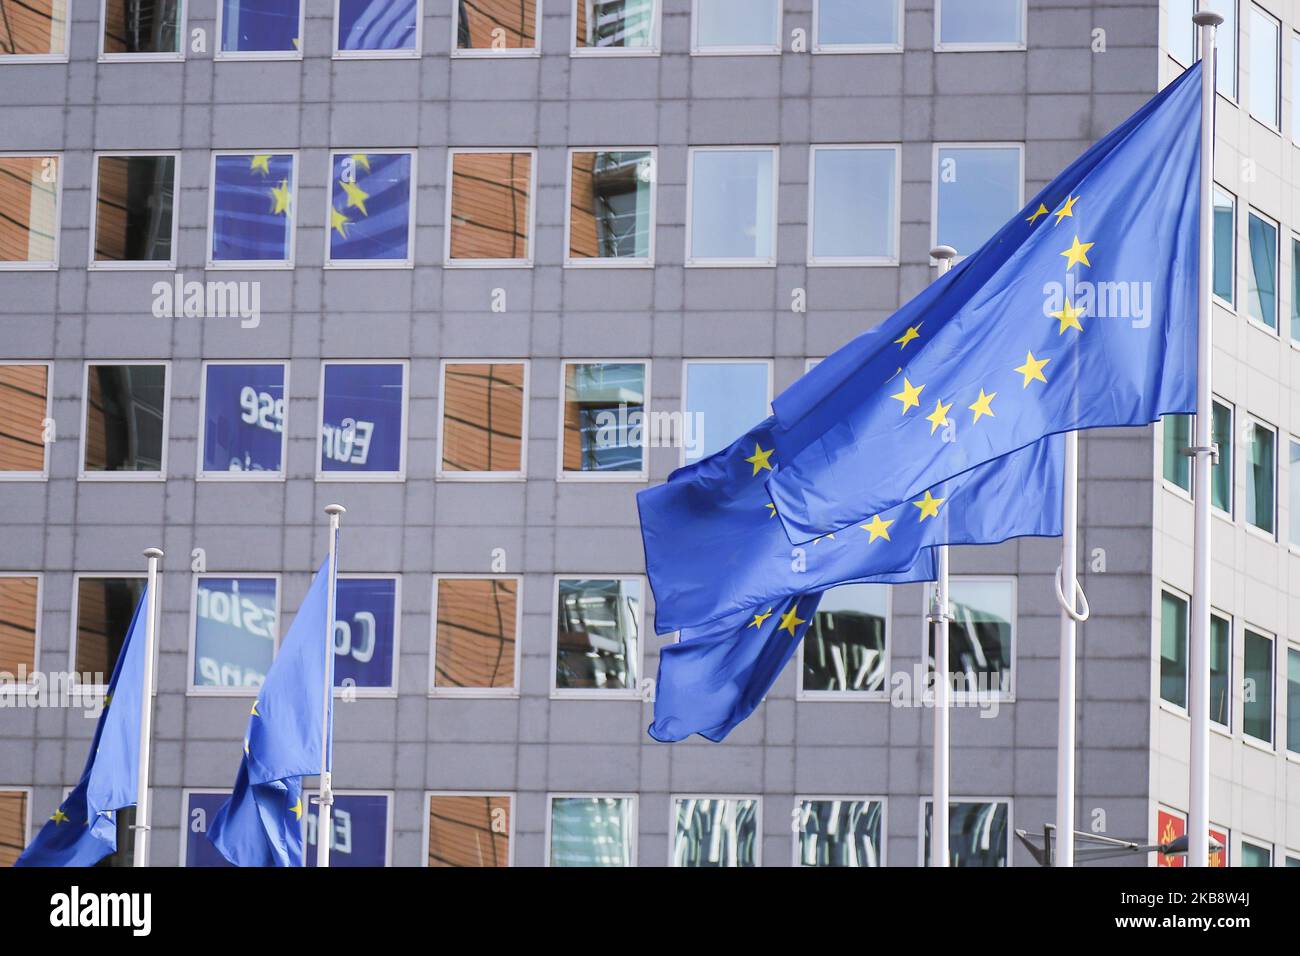 Flaggen von Europa oder Europäische Flagge ist das Symbol des Europarats Coe und der Europäischen Union EU wie in der belgischen Hauptstadt Brüssel vor modernen Architektur hohe Gebäude mit Glas und Stahl Konstruktion das Le Berlaymont Gebäude, Sitz der Europäischen Kommission gesehen. 17. Oktober 2019 - Brüssel, Belgien (Foto von Nicolas Economou/NurPhoto) Stockfoto